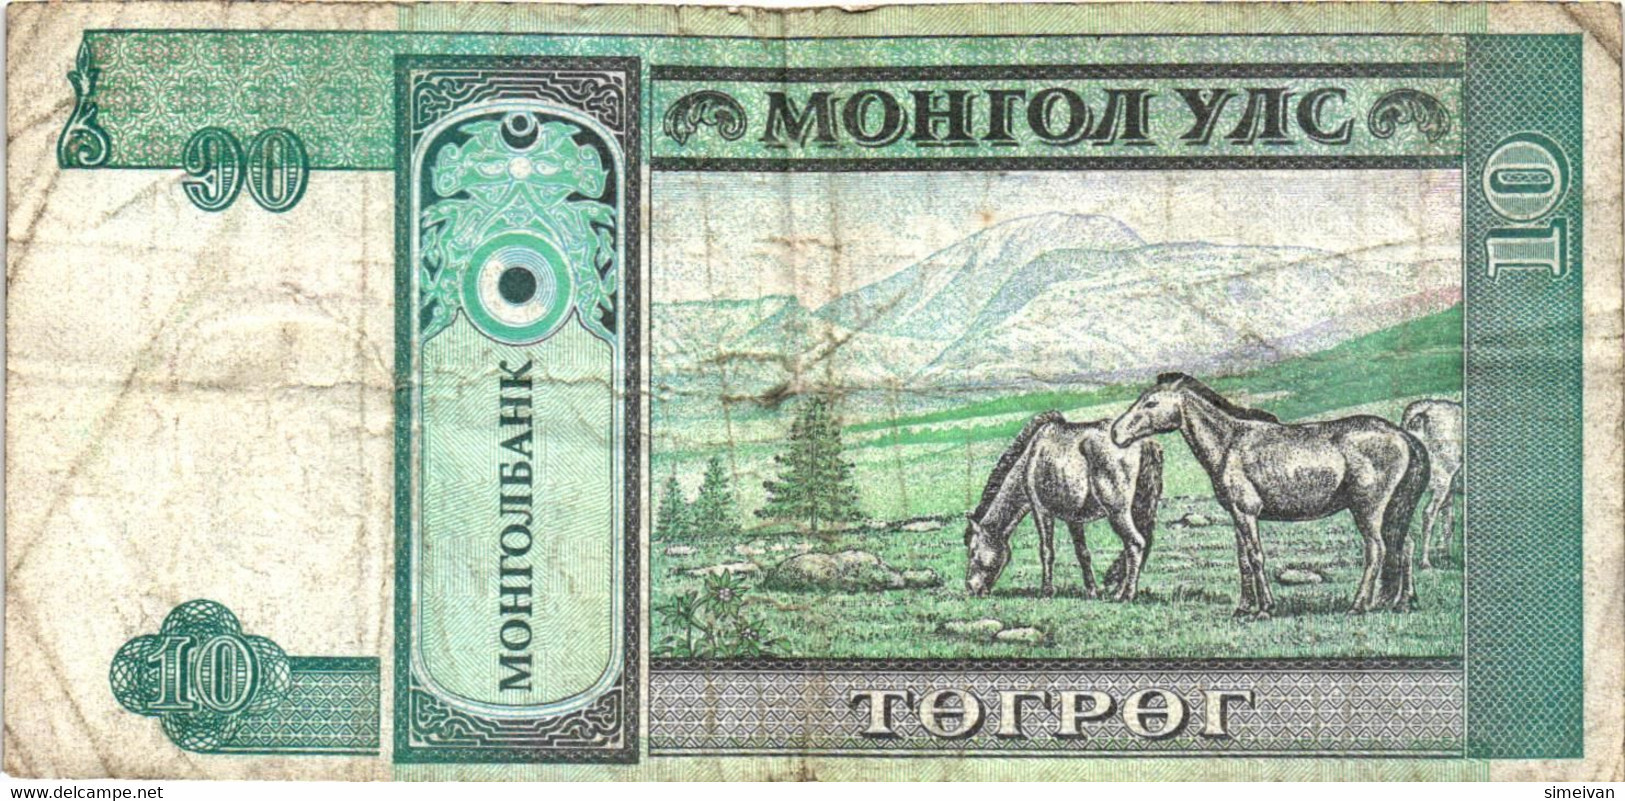 Mongolia 10 Tugrik ND (1993) P-54  Mongolei Mongolie #4190 - Mongolei